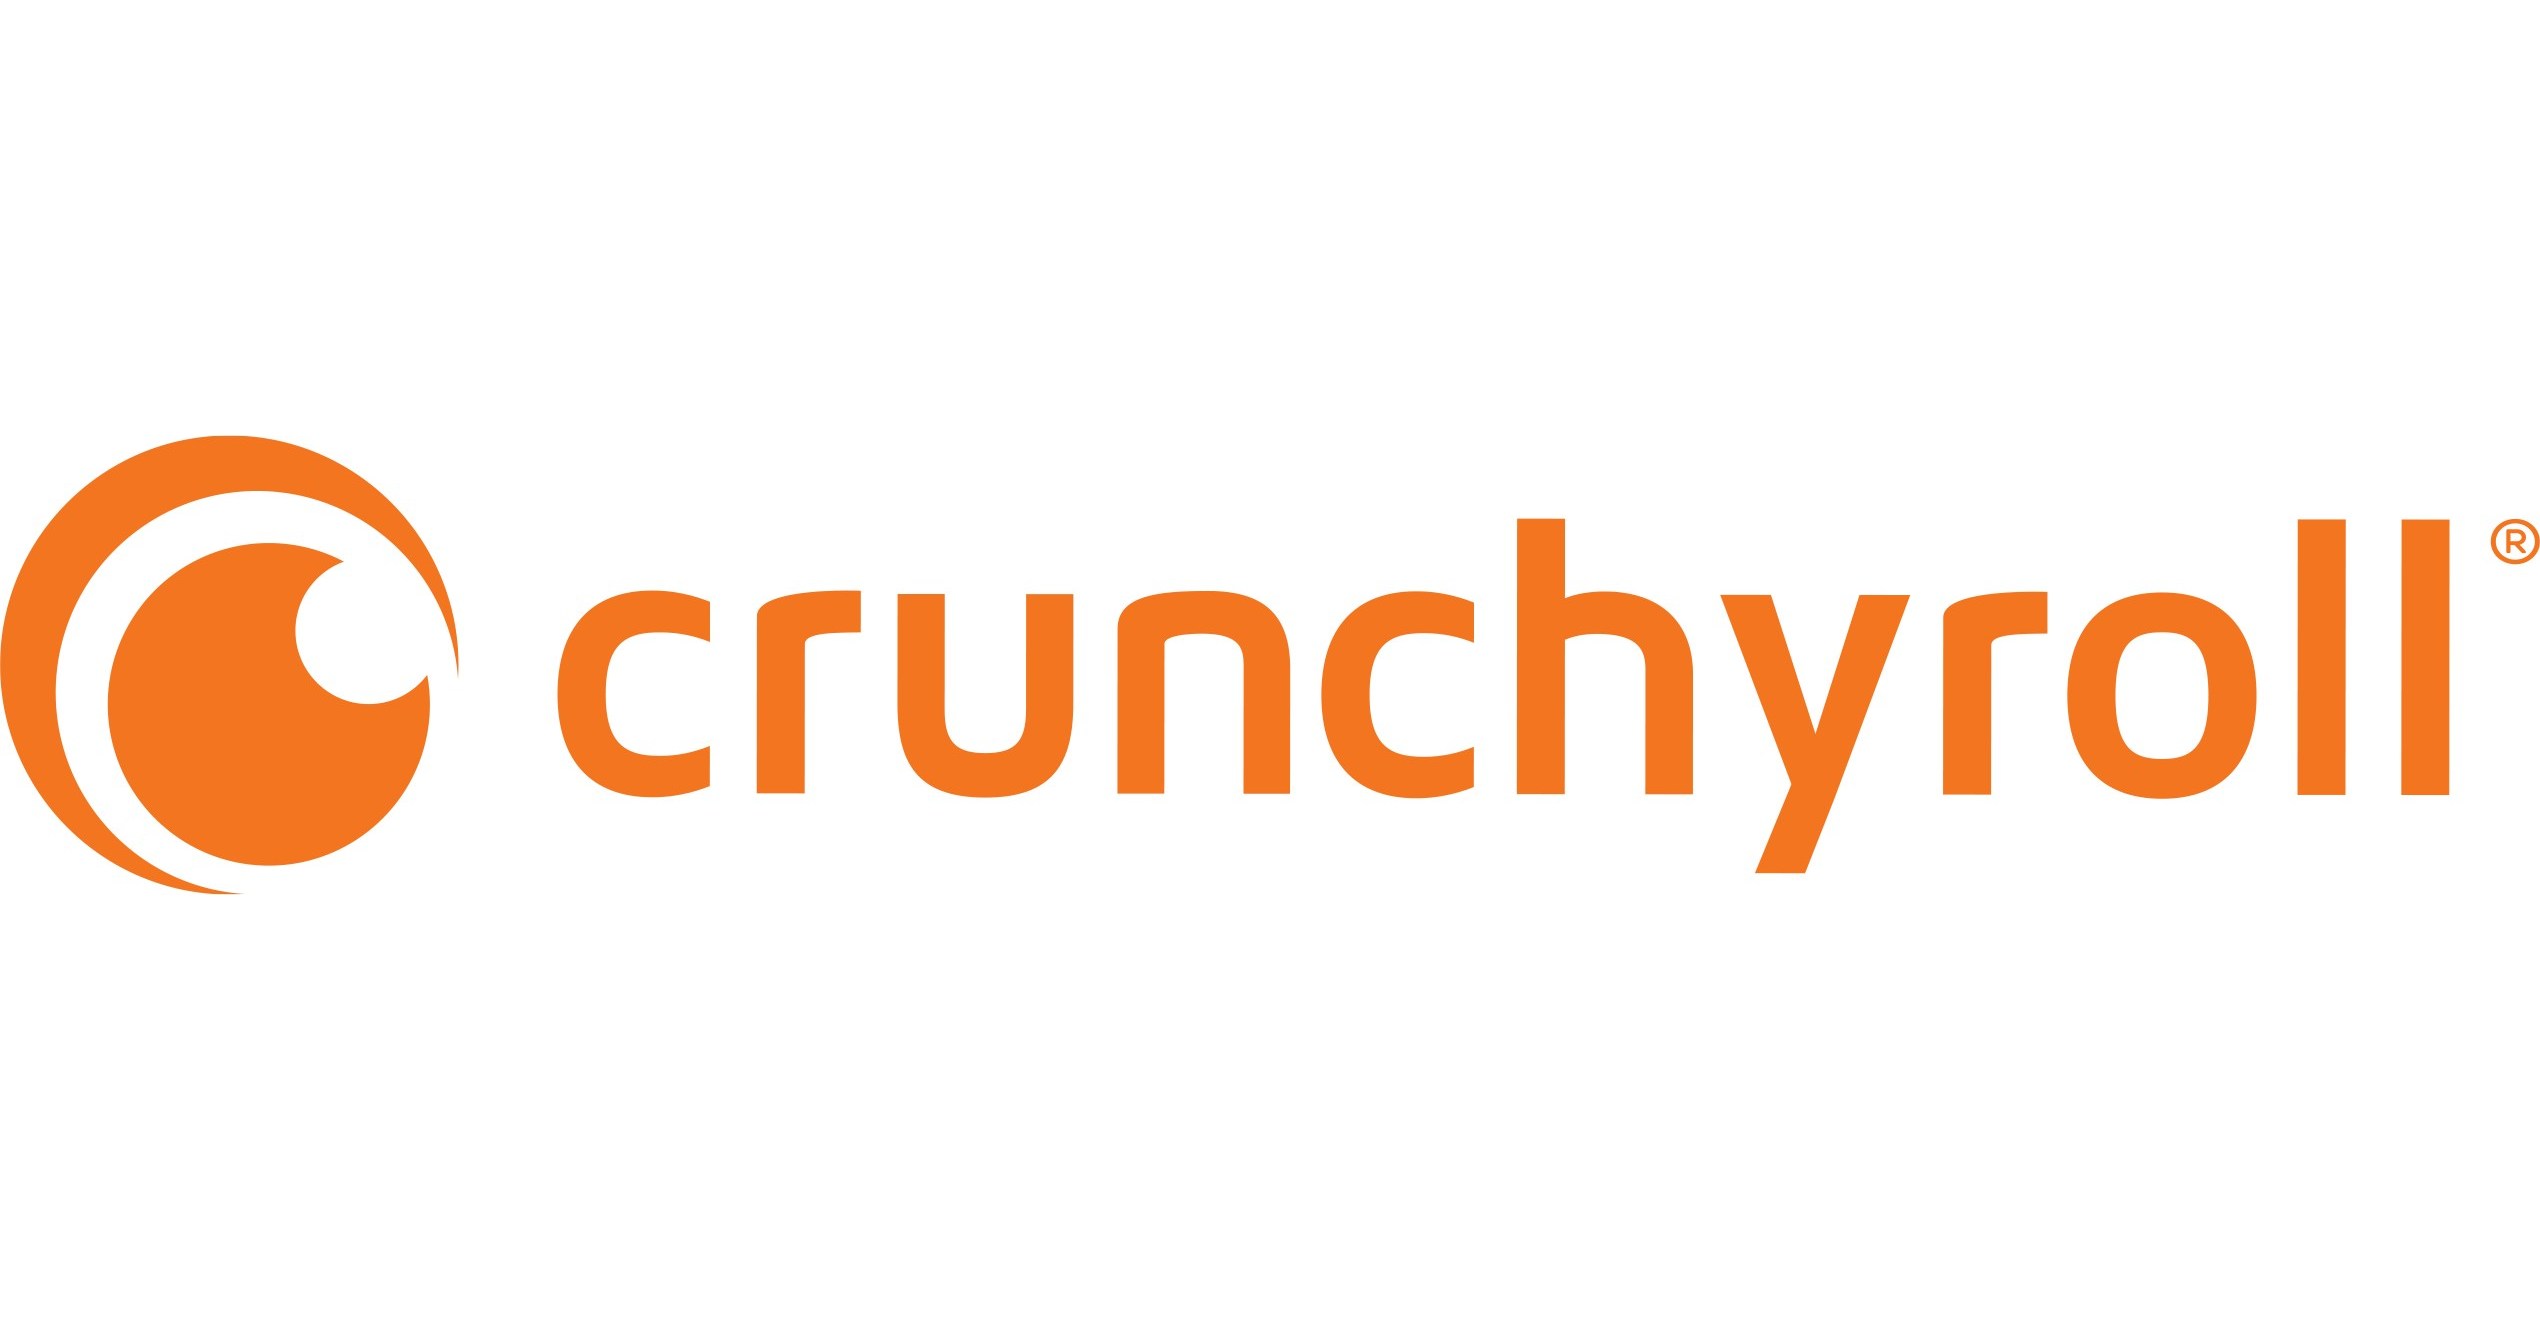 CRUNCHYROLL、アニメオンラインショップ購入で経済成長を加速